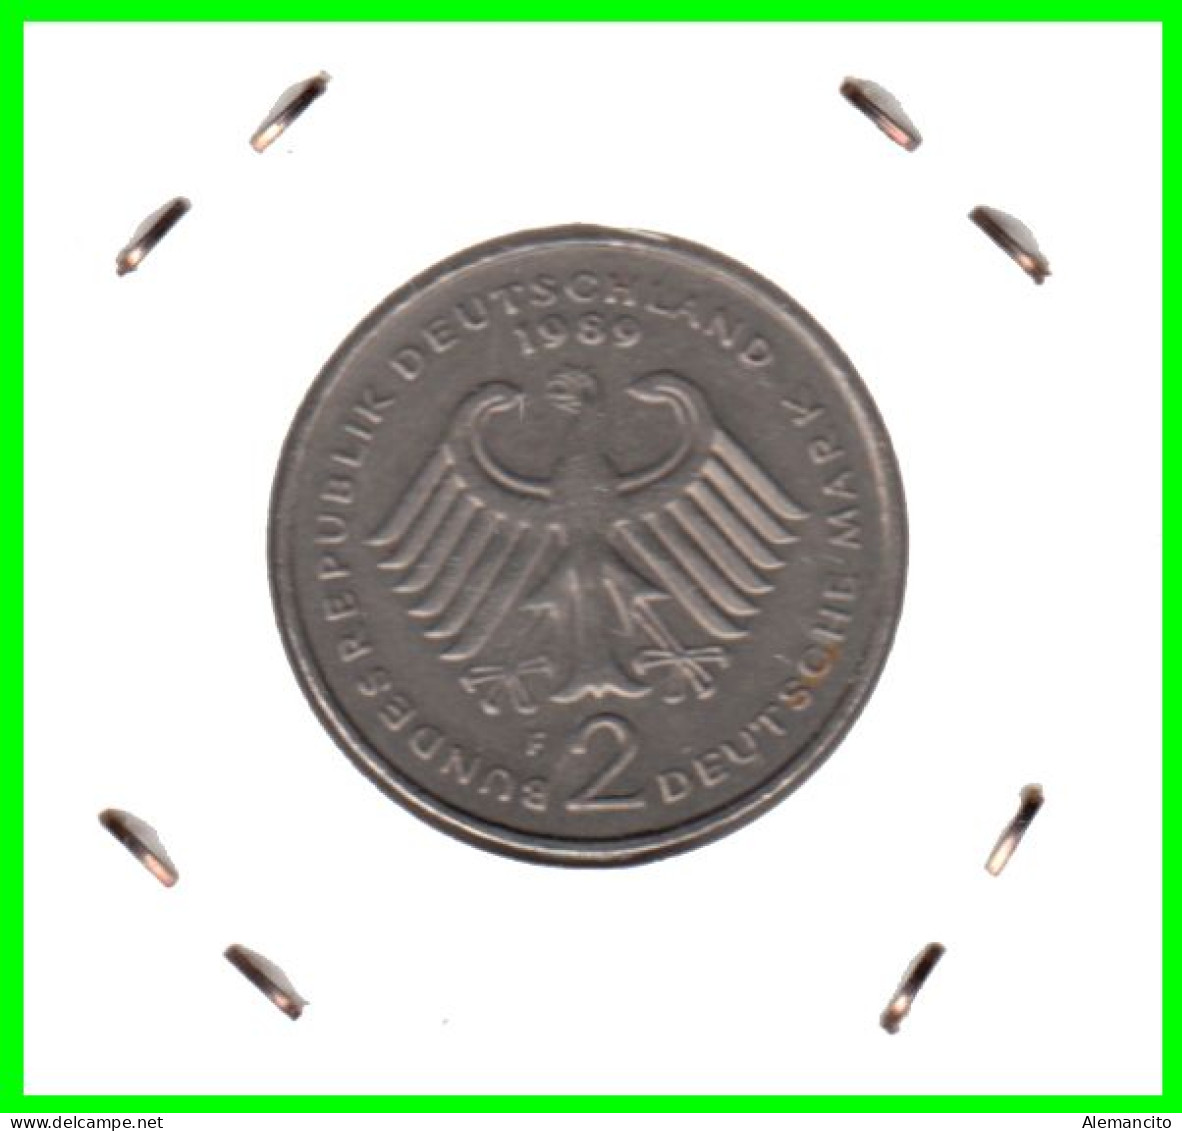 COIN ALEMANIA ( GERMANY ) MONEDA DE 2.00 DM AÑO 1989 CECA-F - STTUCART -LUDWIG ERHARD - NÍQUEL - 2 Marchi